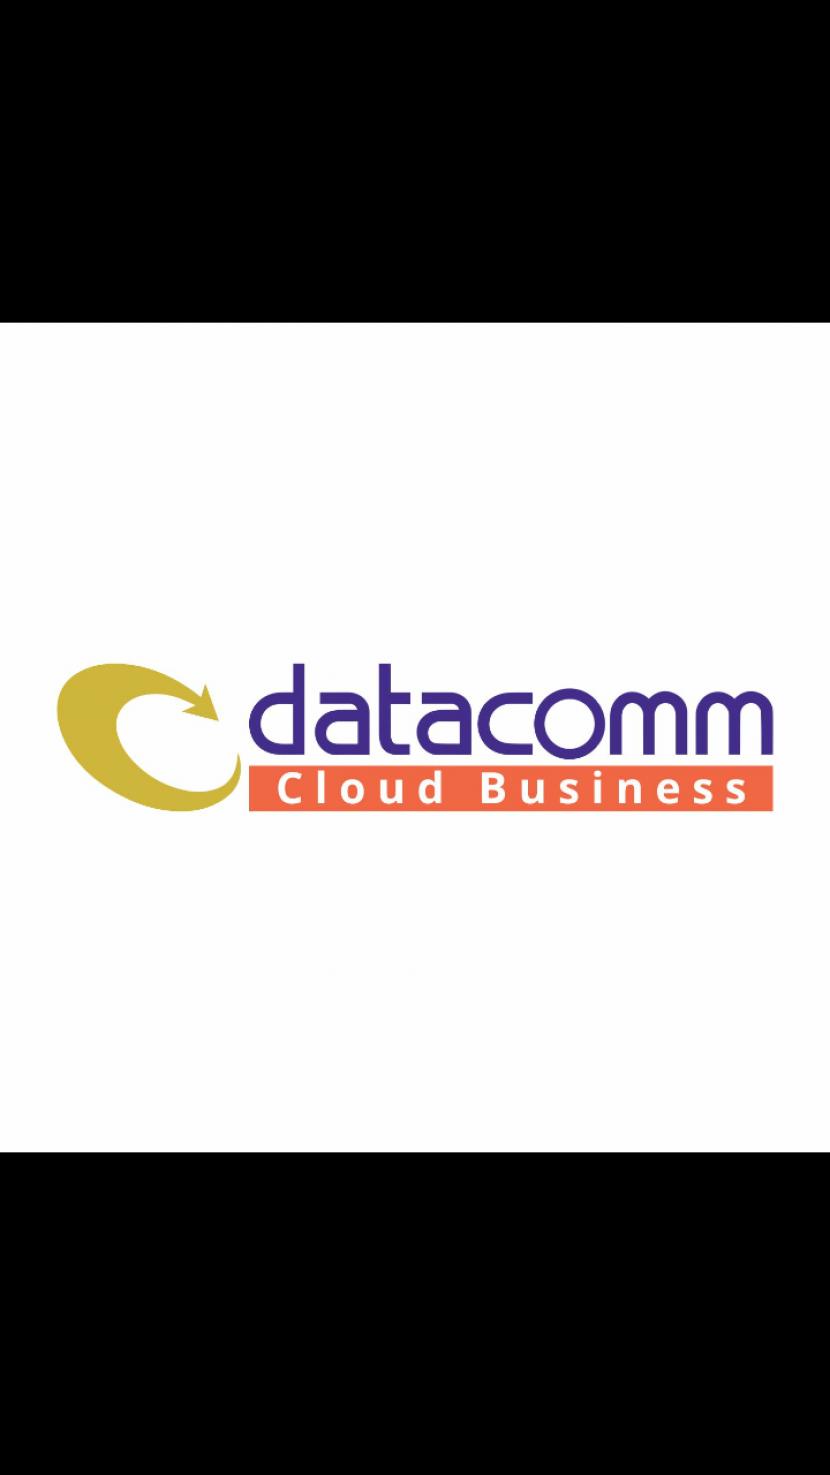 Datacomm Cloud Business